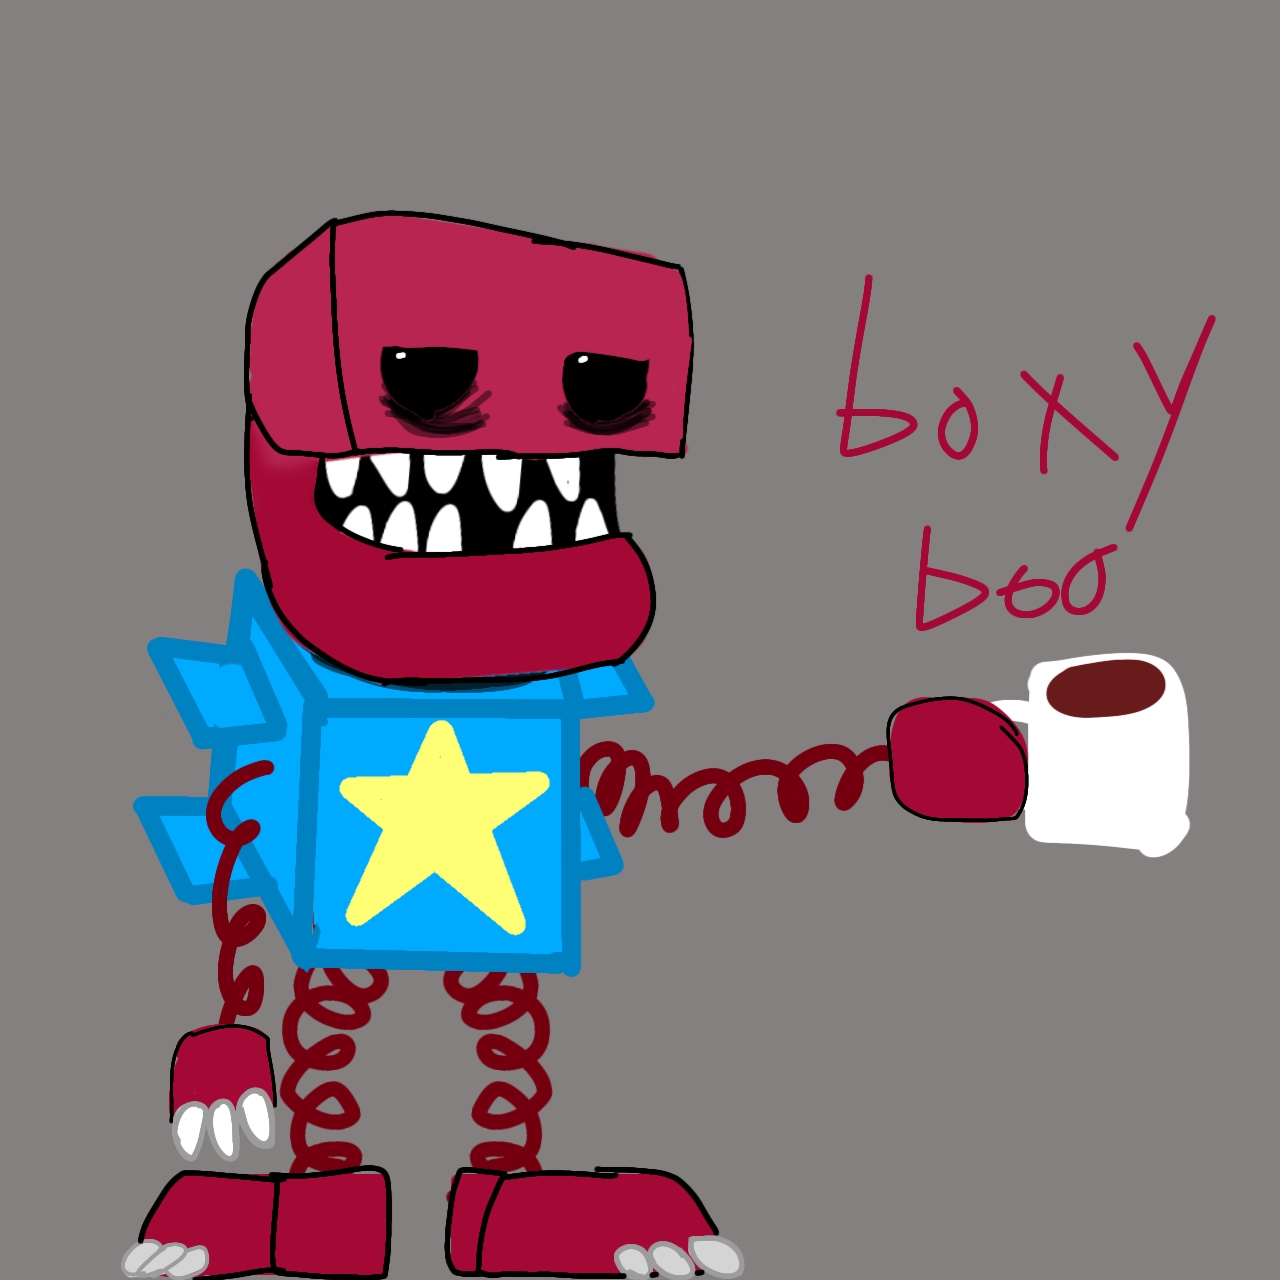 Should I draw Boxy Boo?